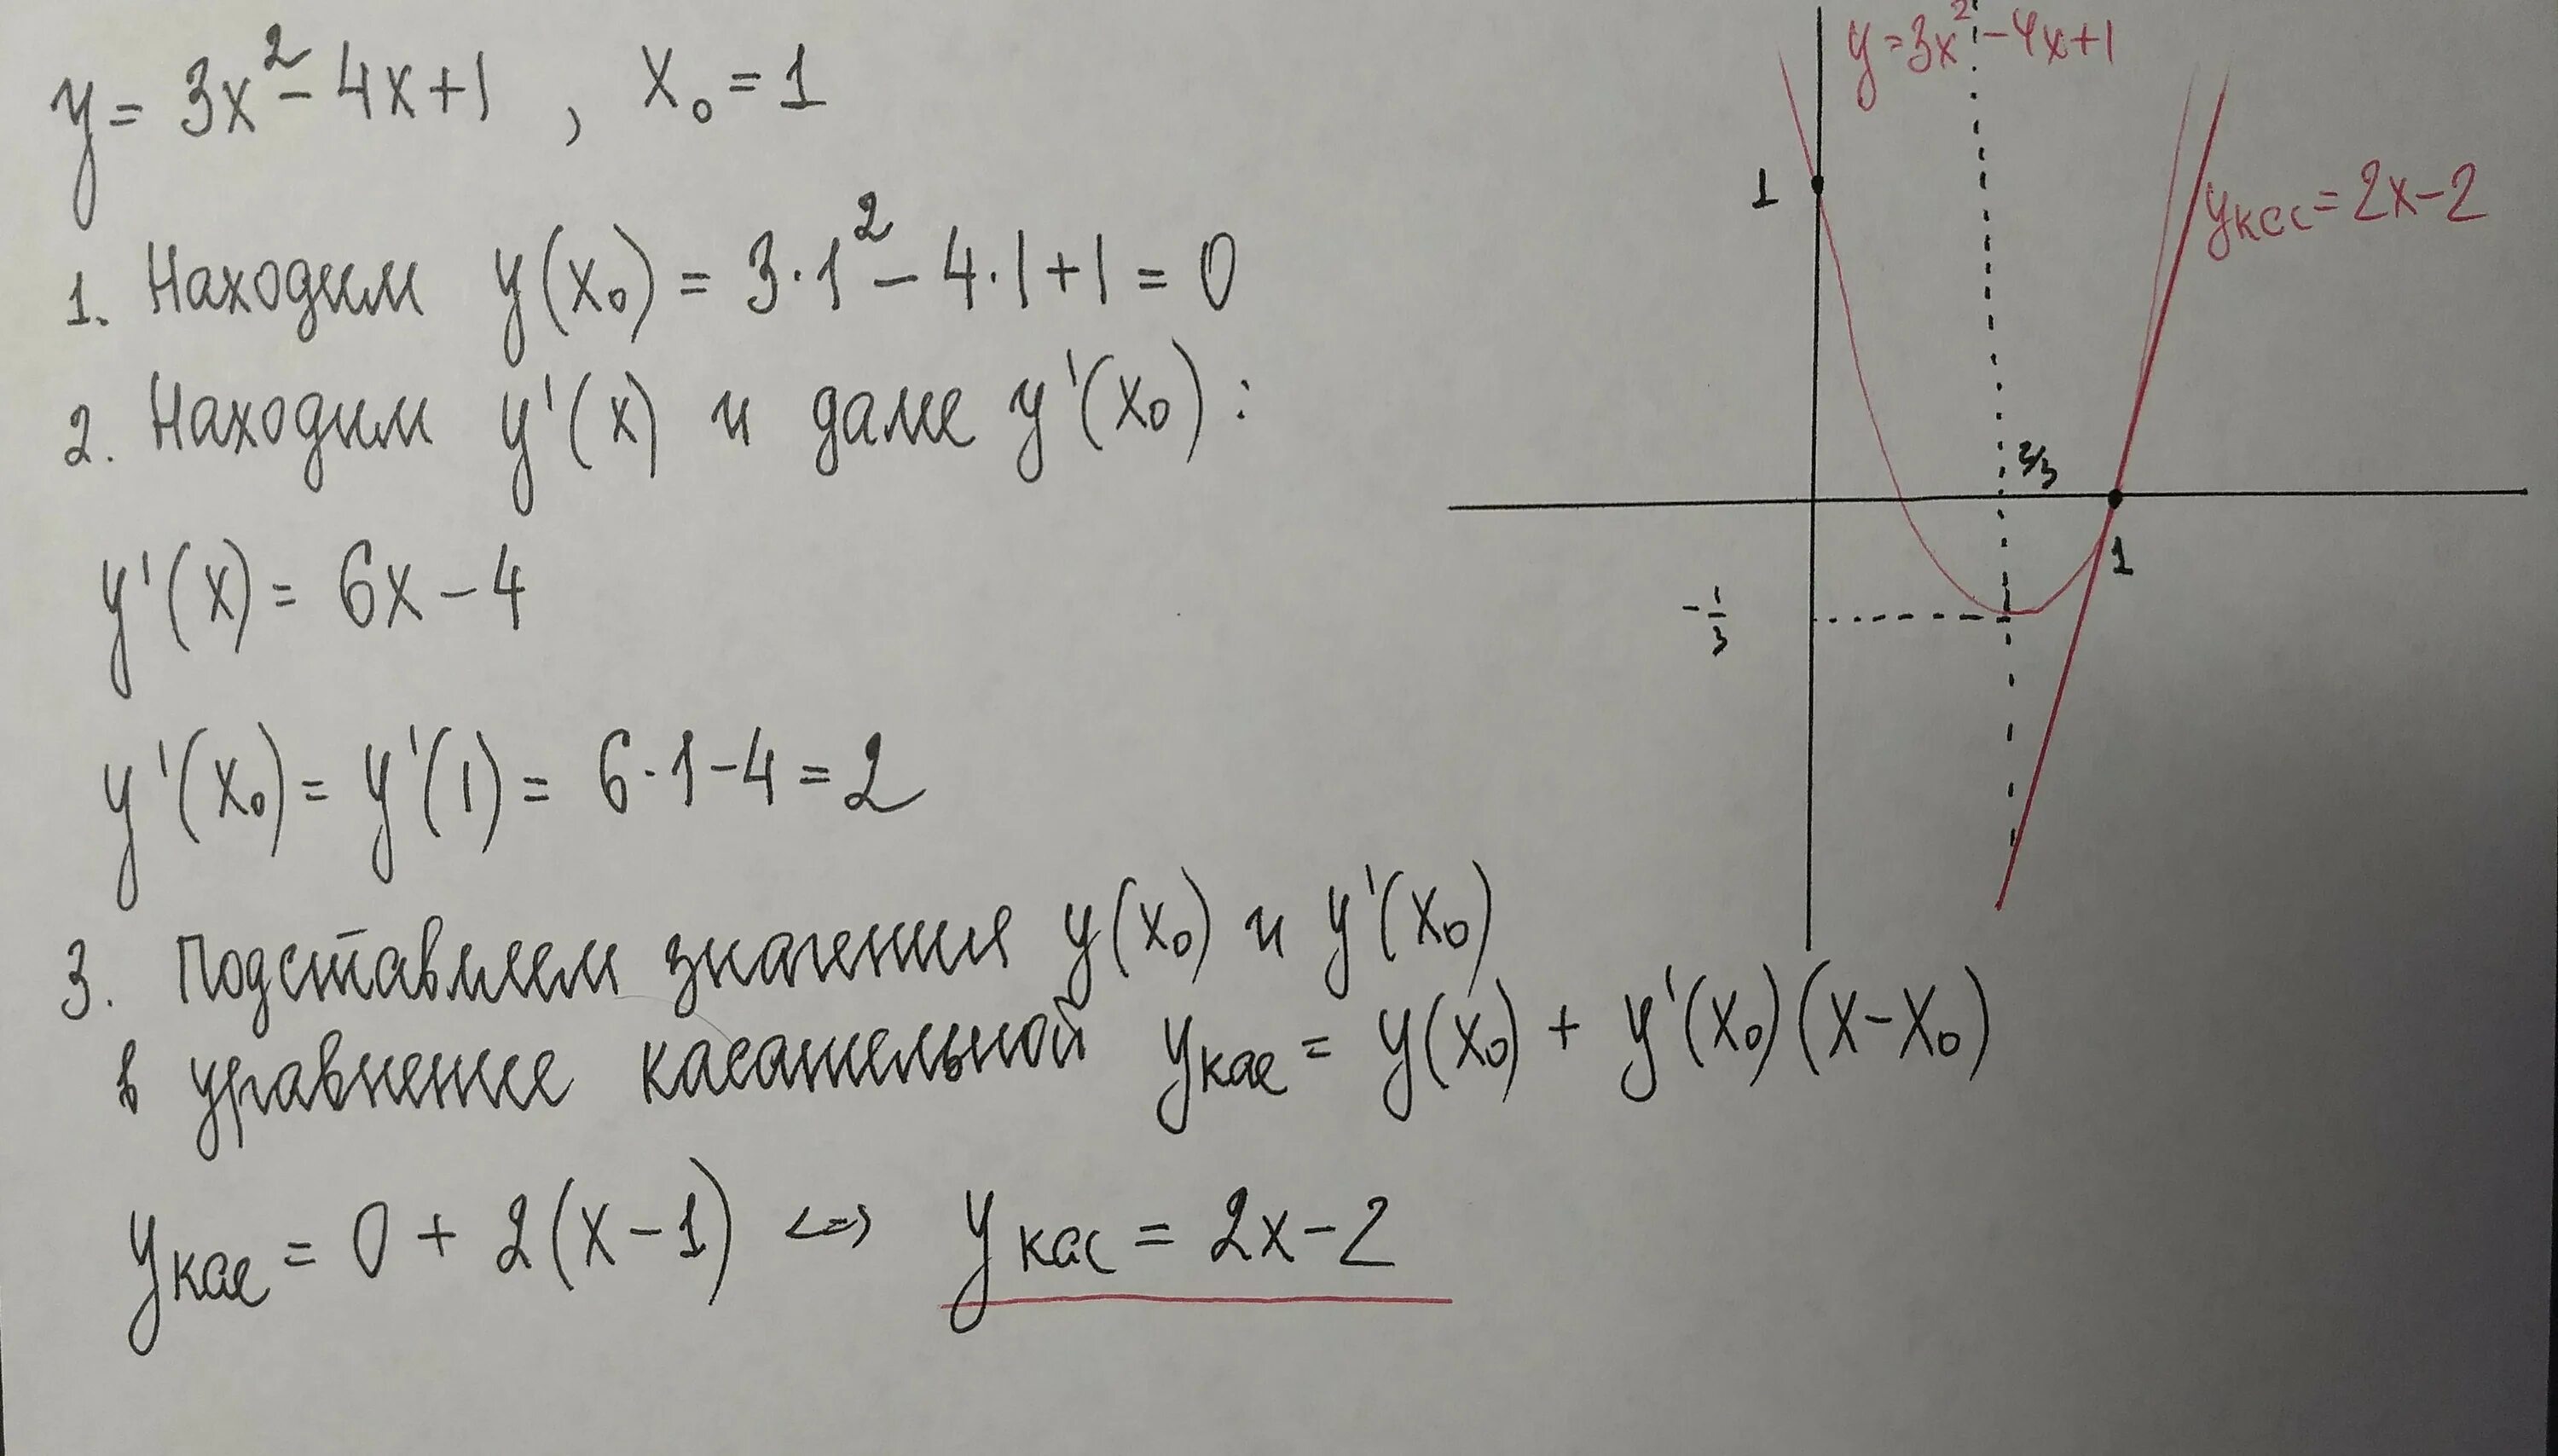 4x2 4x 4 0. Уравнение касательной к параболе в точке. Уравнение касательной к параболе y=x\2 - 4x +3. Уравнение касательной к Кривой в точке. Уравнение касательной в точке x0.